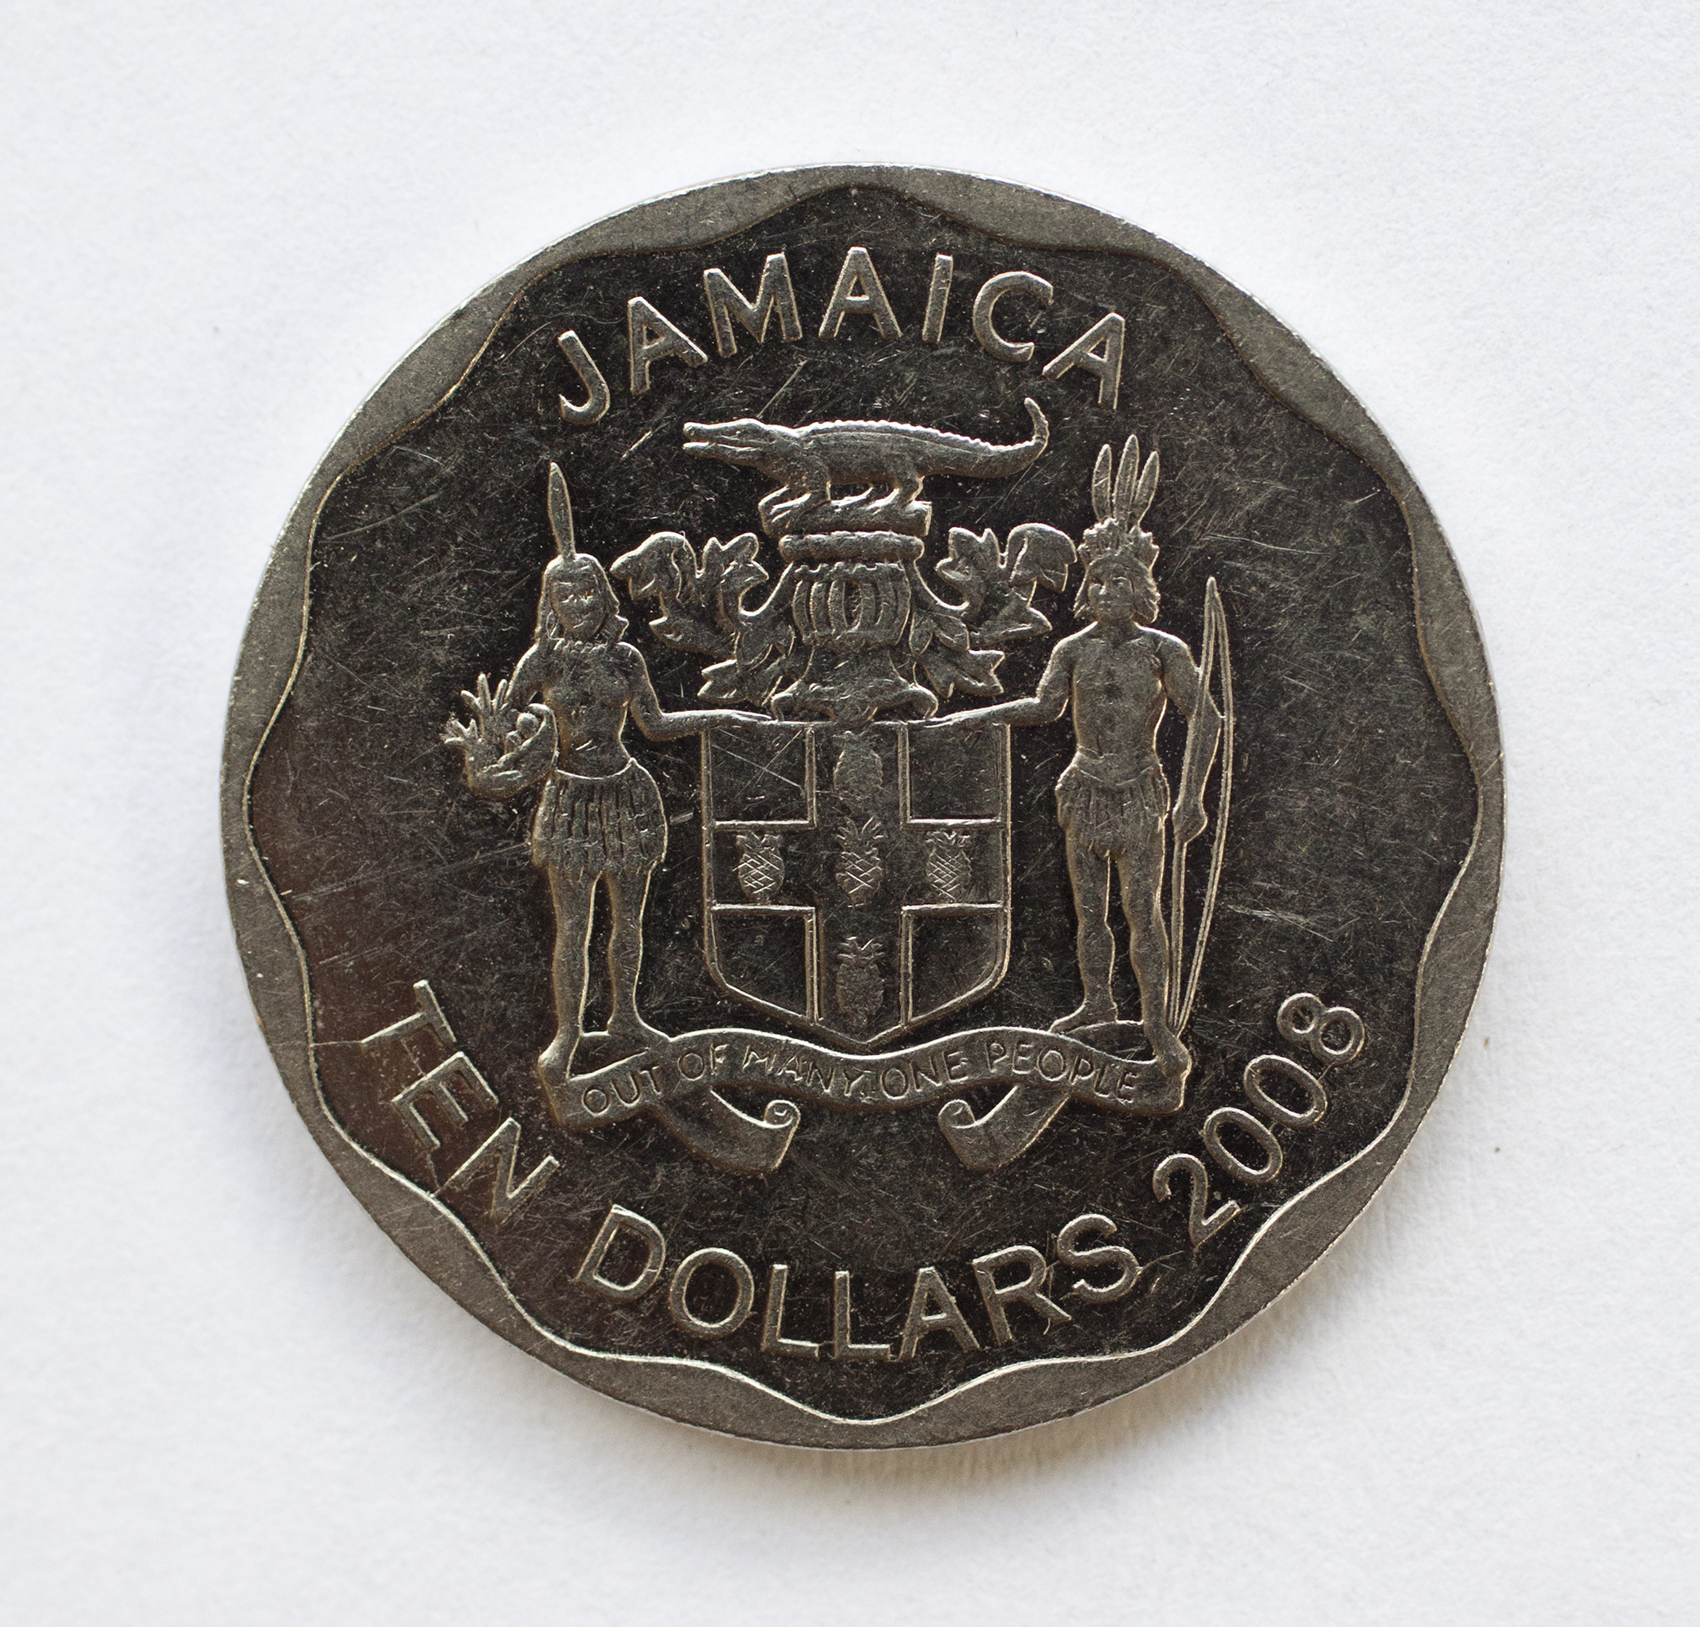 diephuis-jamaica-084.jpg